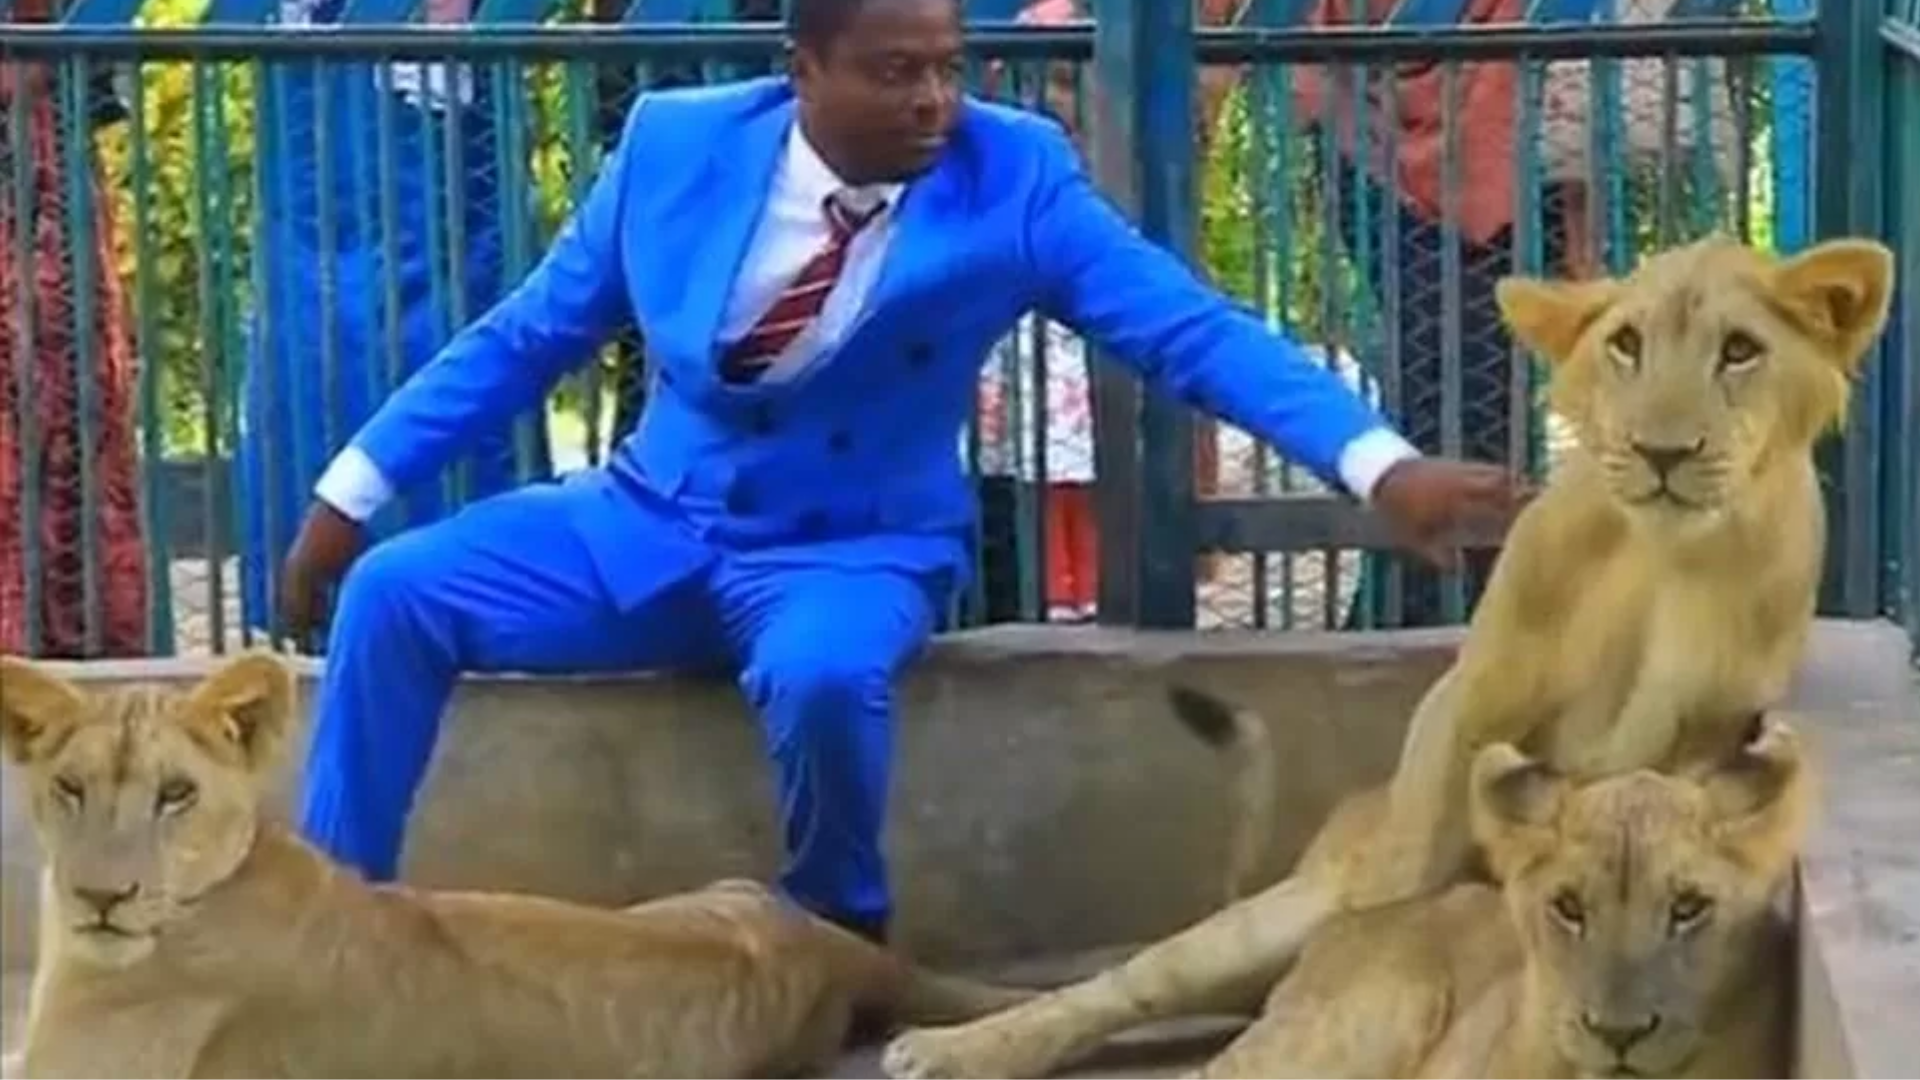 “Pastor” viraliza ao dividir jaula com leoas, e sua real identidade é revelada após repercussão; assista